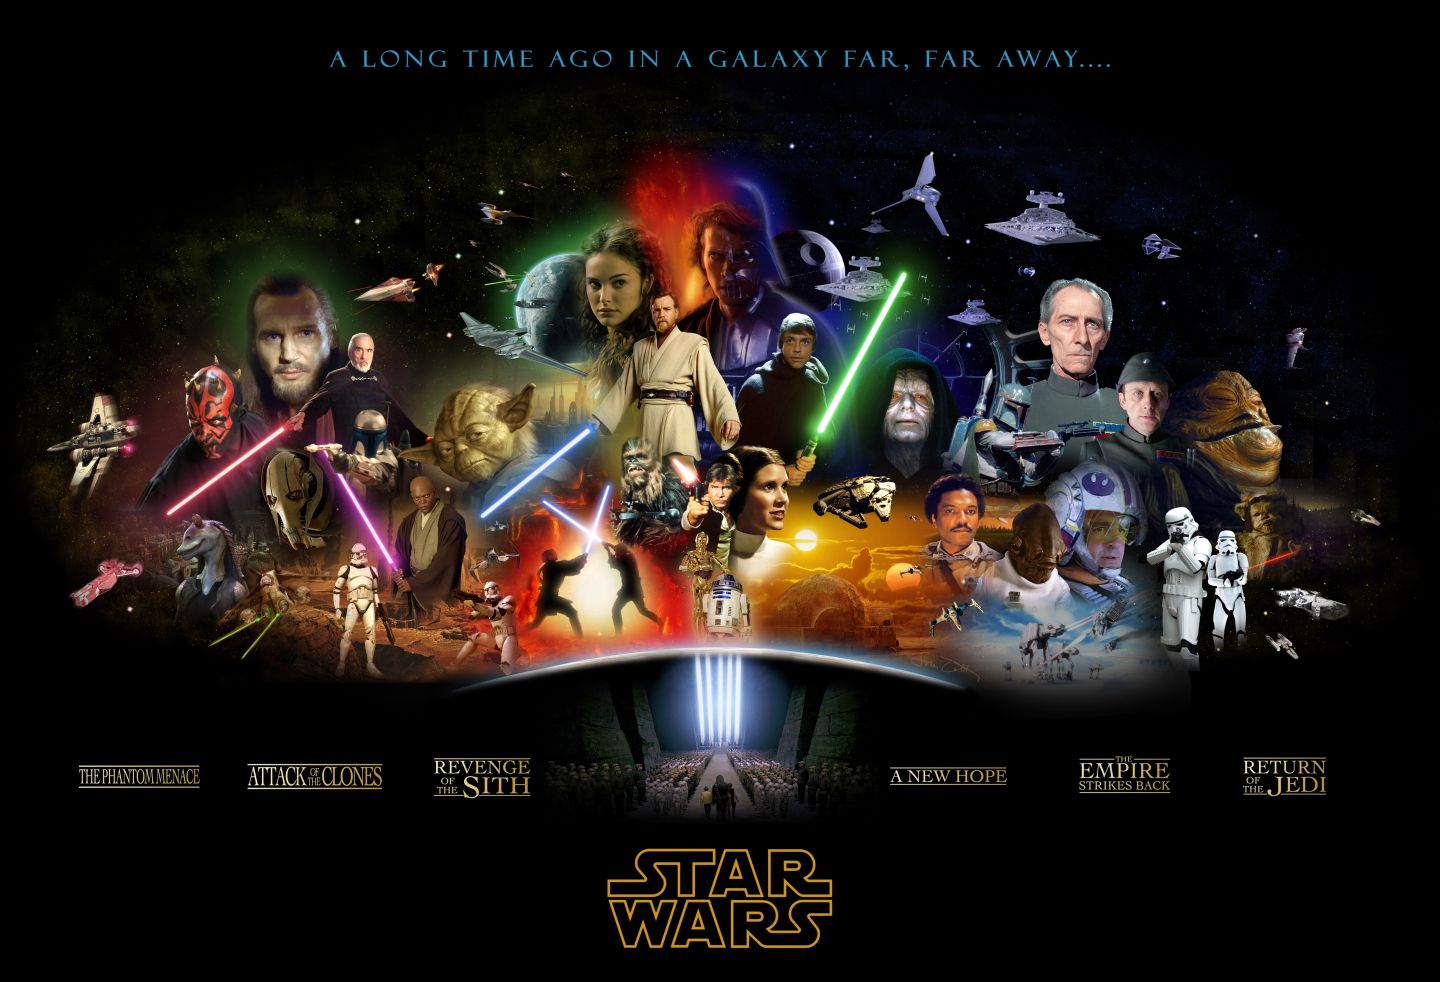 http://images.fanpop.com/images/image_uploads/Star-Wars-Complete-Saga-Poster-star-wars-425795_1440_982.jpg